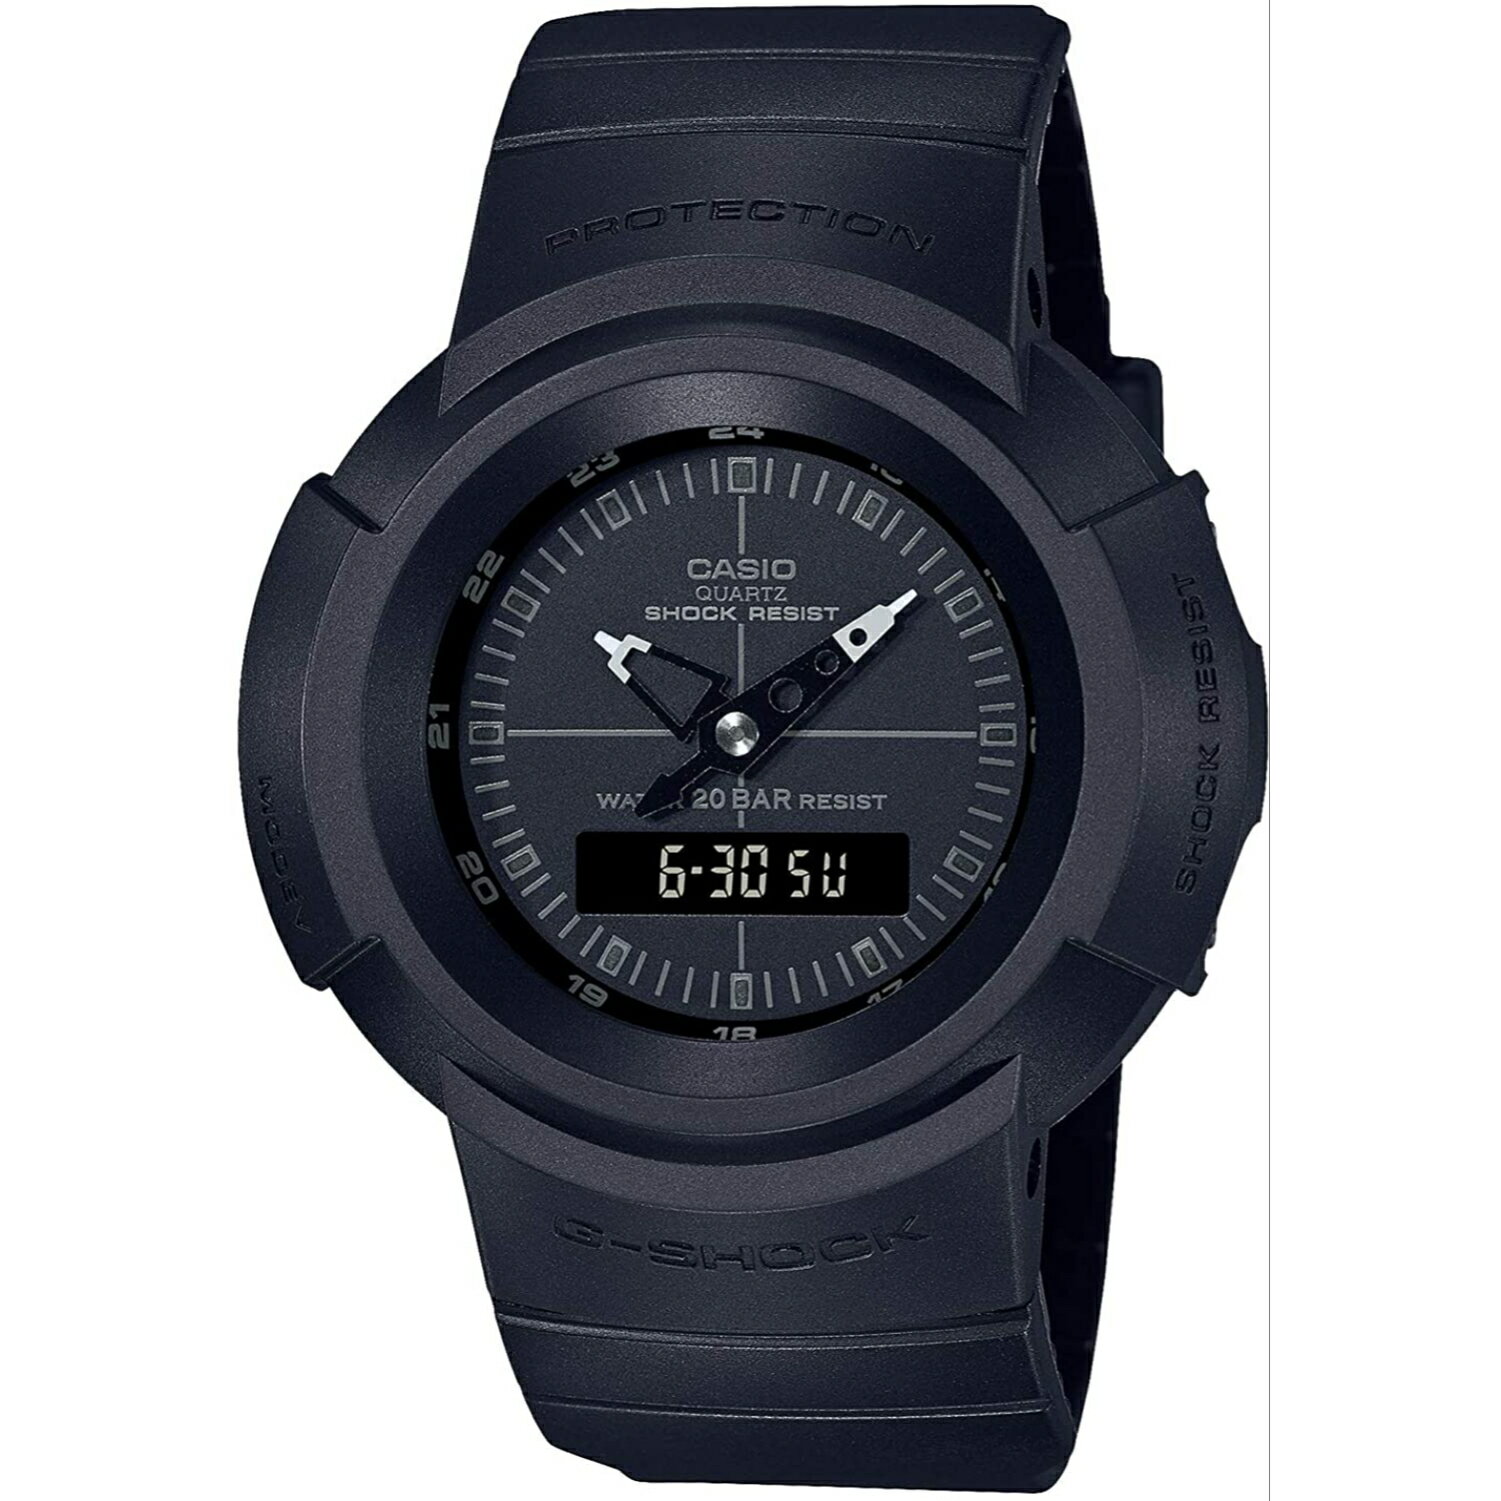 CASIO カシオ G-SHOCK ジーショック腕時計 時計 復刻 メンズ ユニセックス ブラック 防水 クオーツ アナデジ リバイバル AW-500BB-1E プレゼント ギフト 3年保証 送料無料